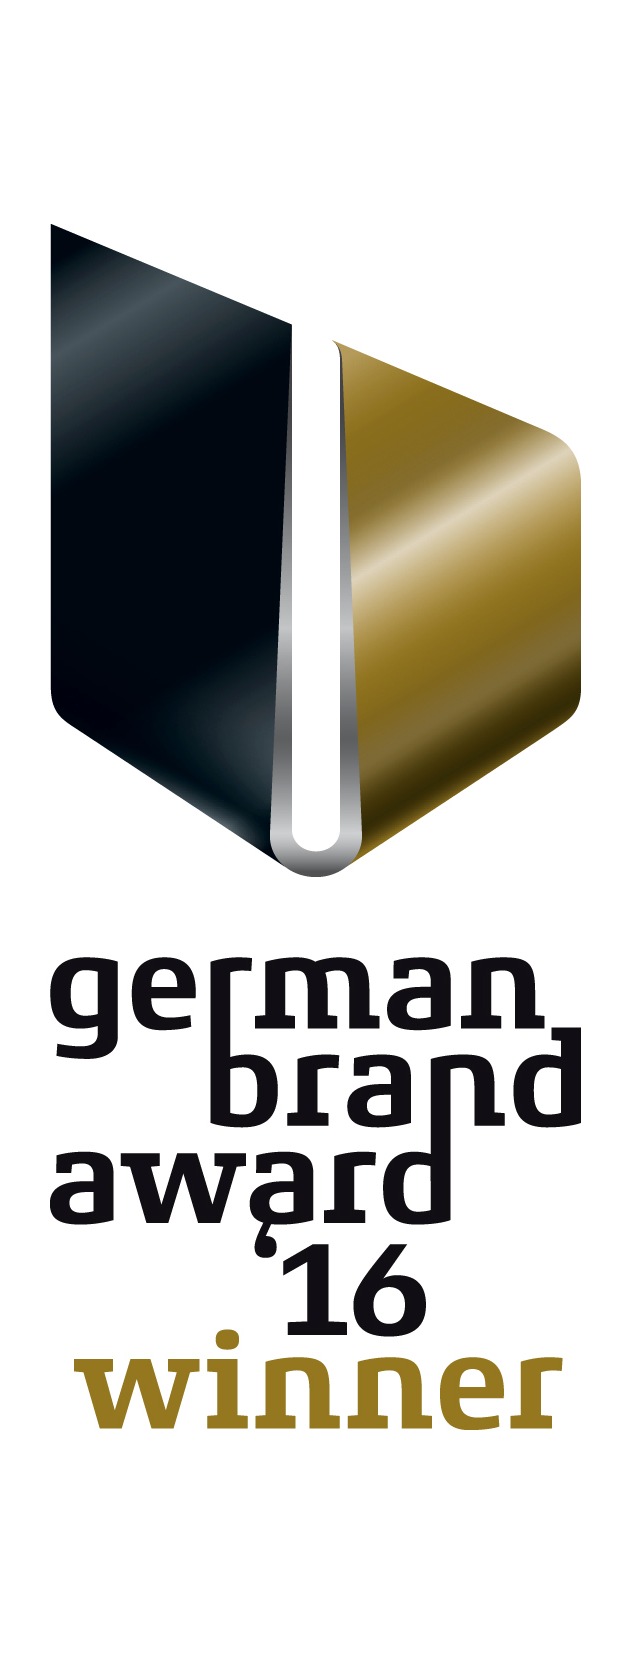 Preis für erfolgreiche Markenführung - Starke Marke: medi mit German Brand Award ausgezeichnet